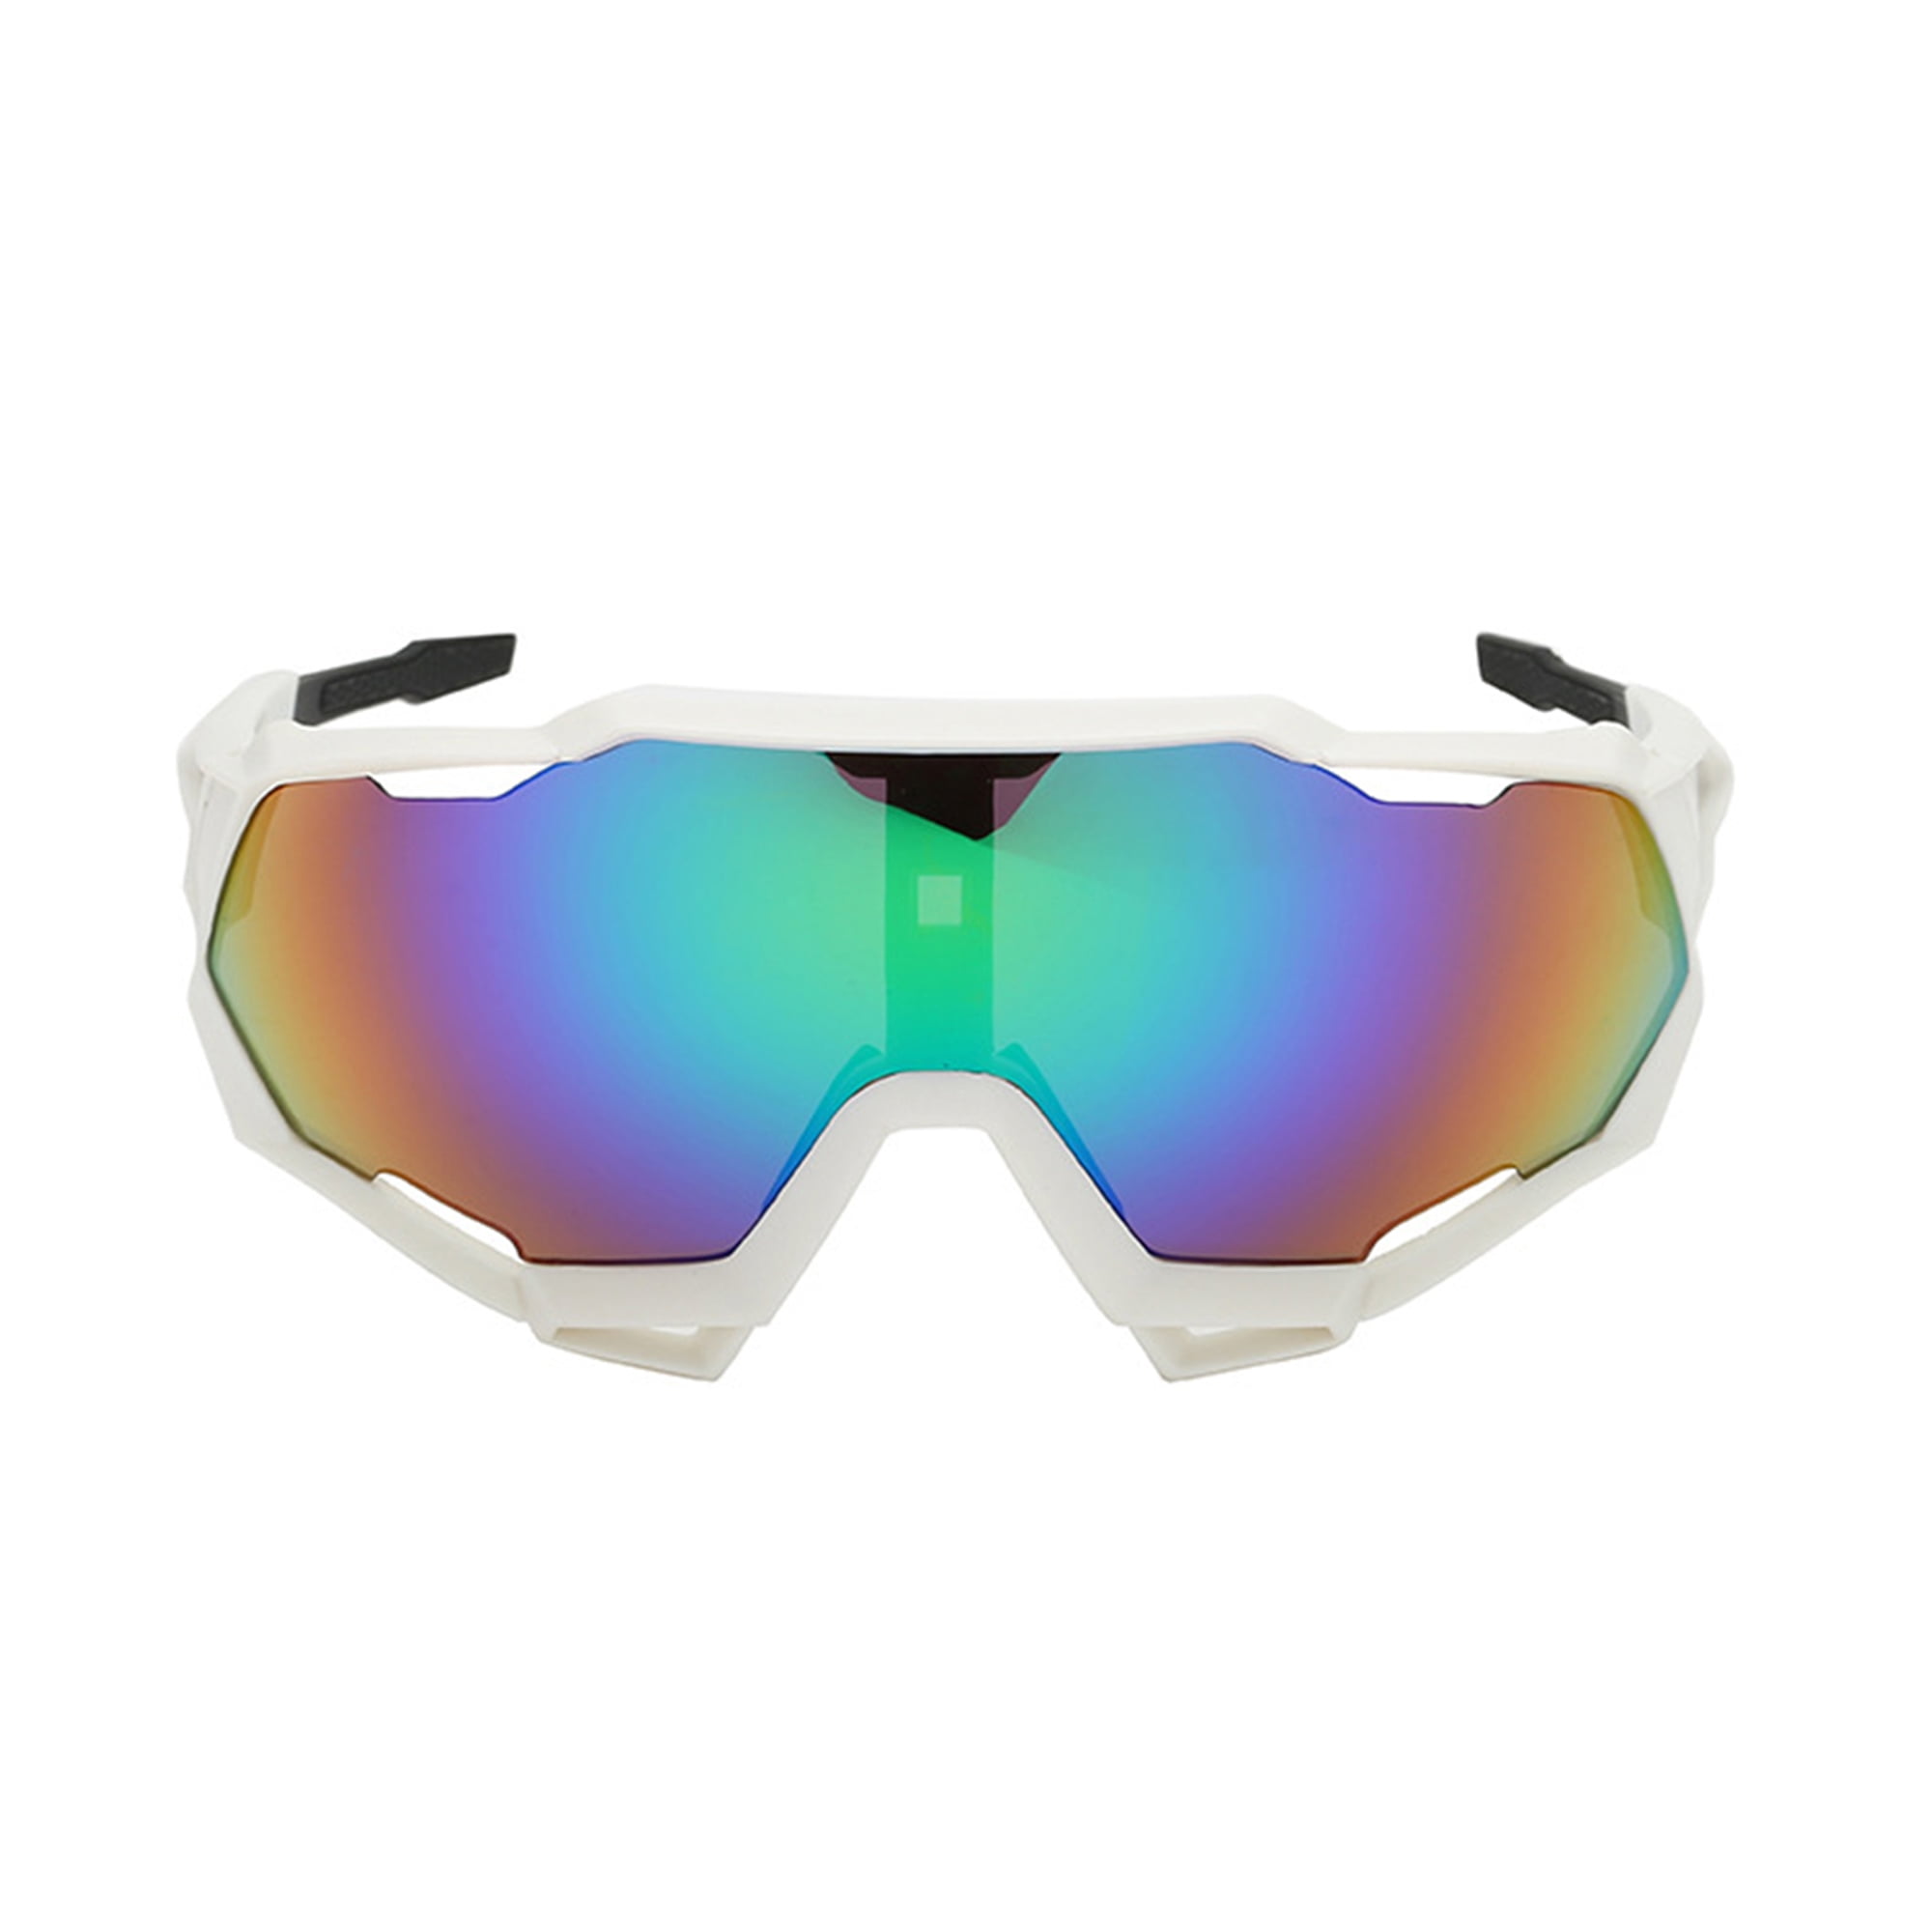 GAFAS DE SOL CICLISMO CICLISTA UV400 DEPORTE Sunglasses Cycling Sports Glasses 